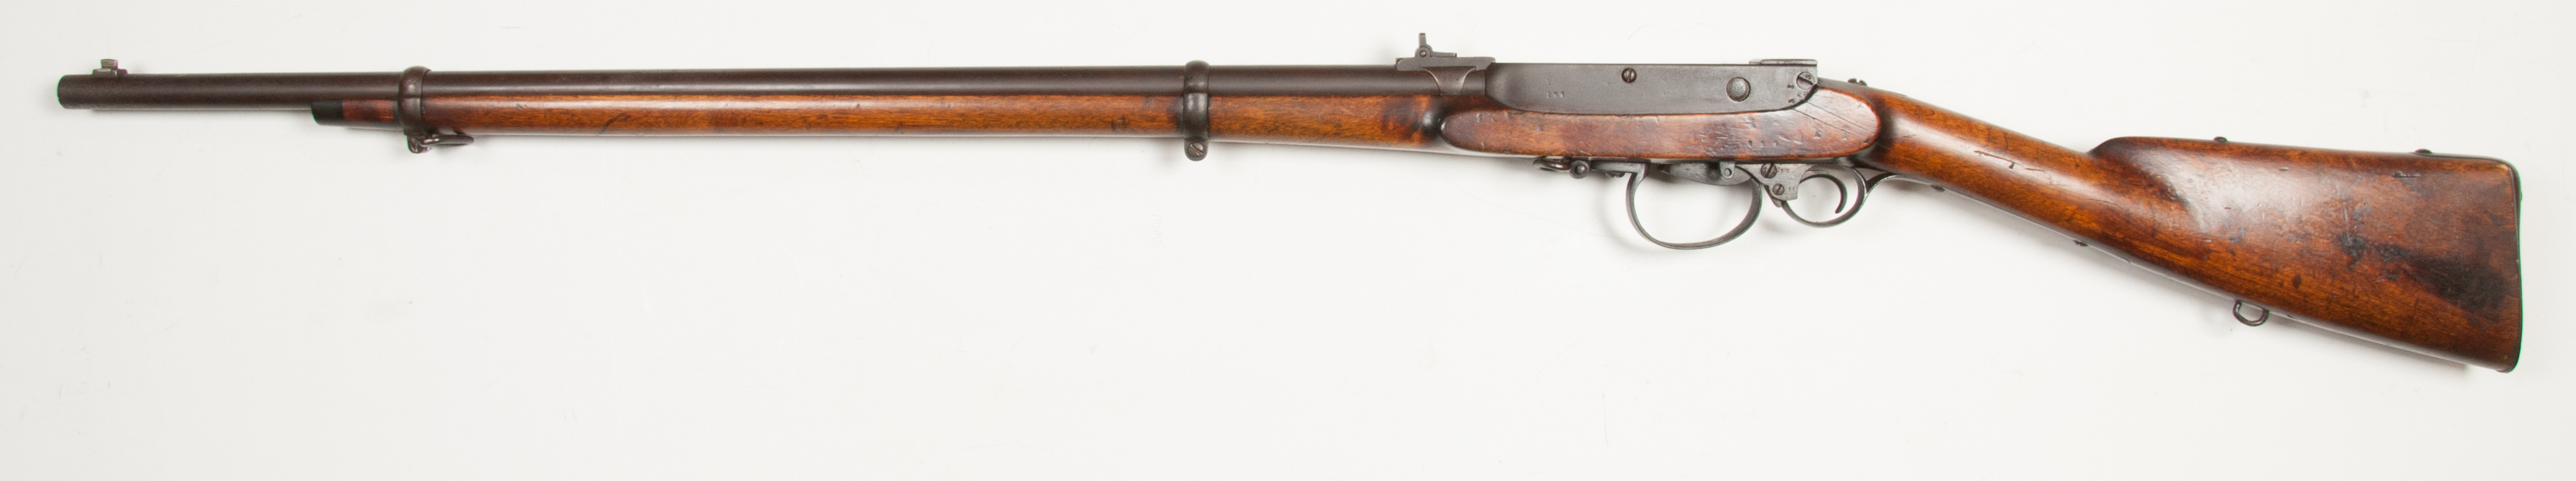 ./guns/rifle/bilder/Rifle-Kongsberg-Kammerlader-M1860-Kort-154-1861-Skytterlag-2.jpg